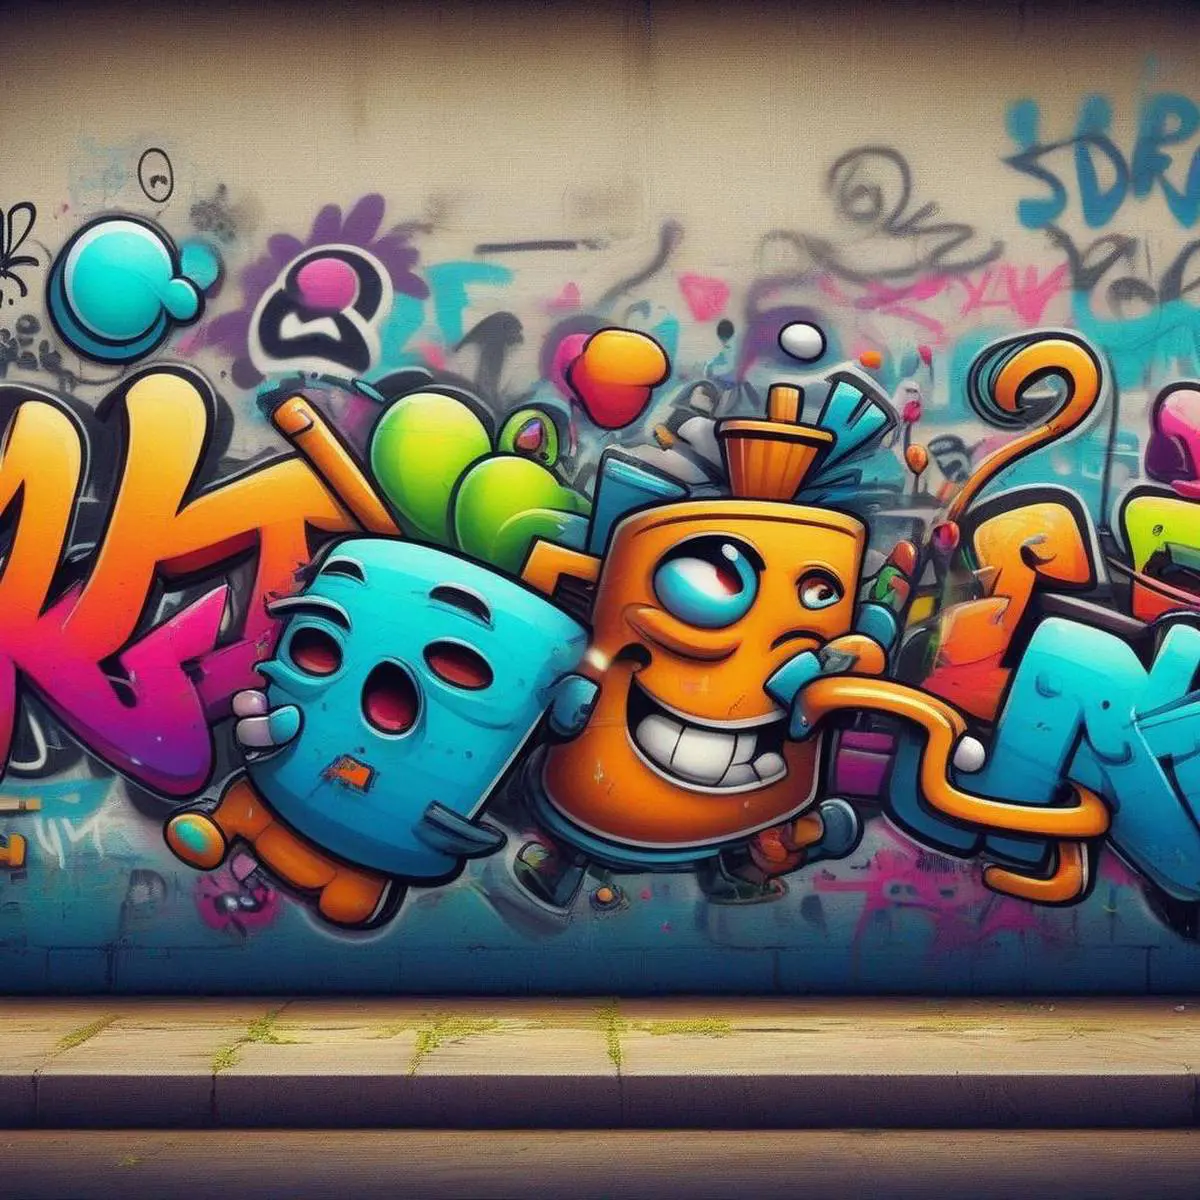 Graffiti puns